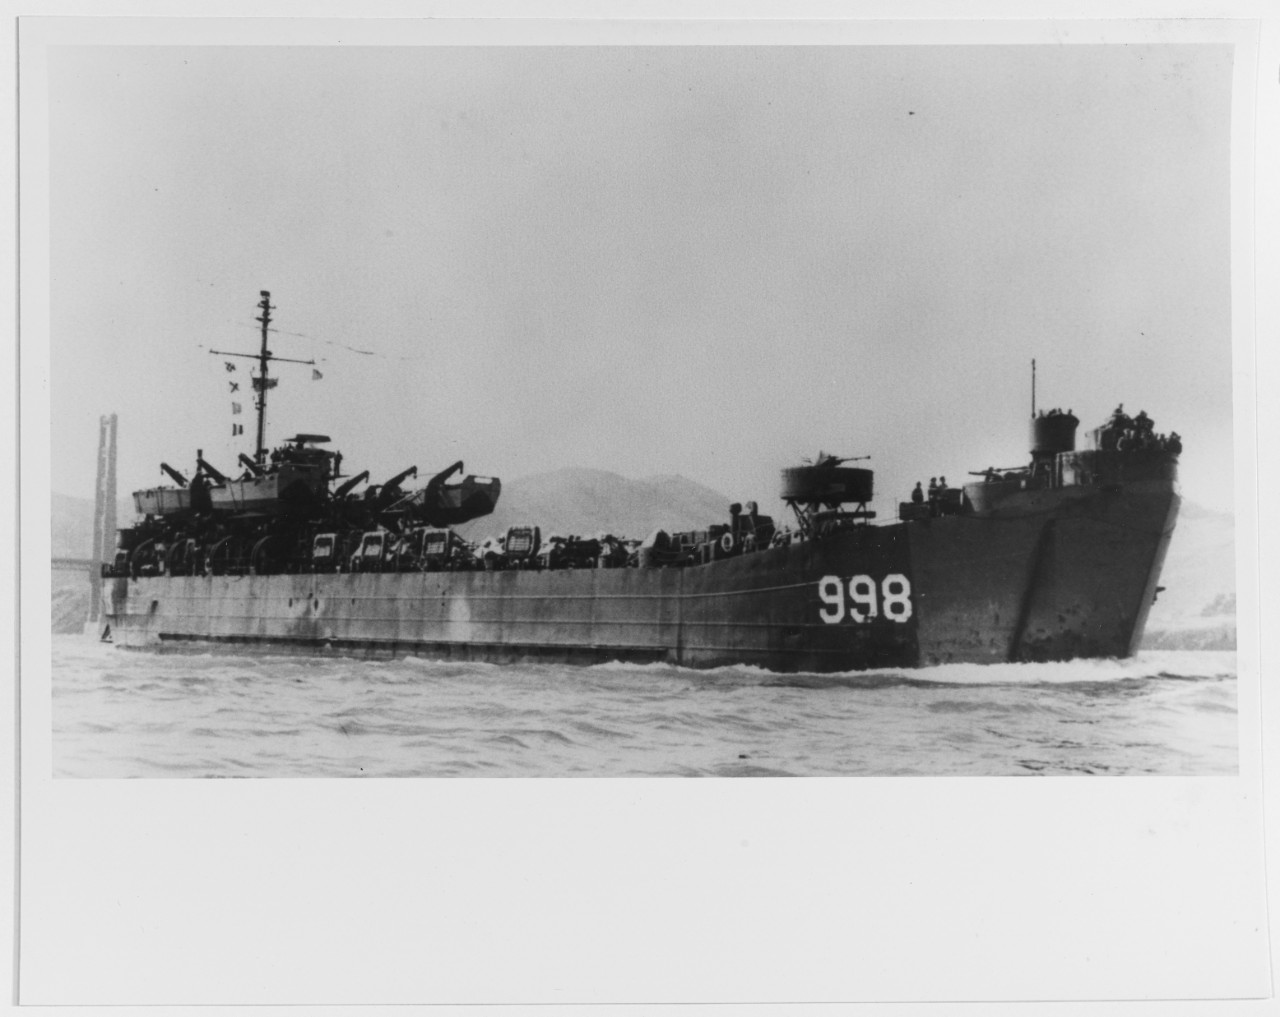 USS LST-998